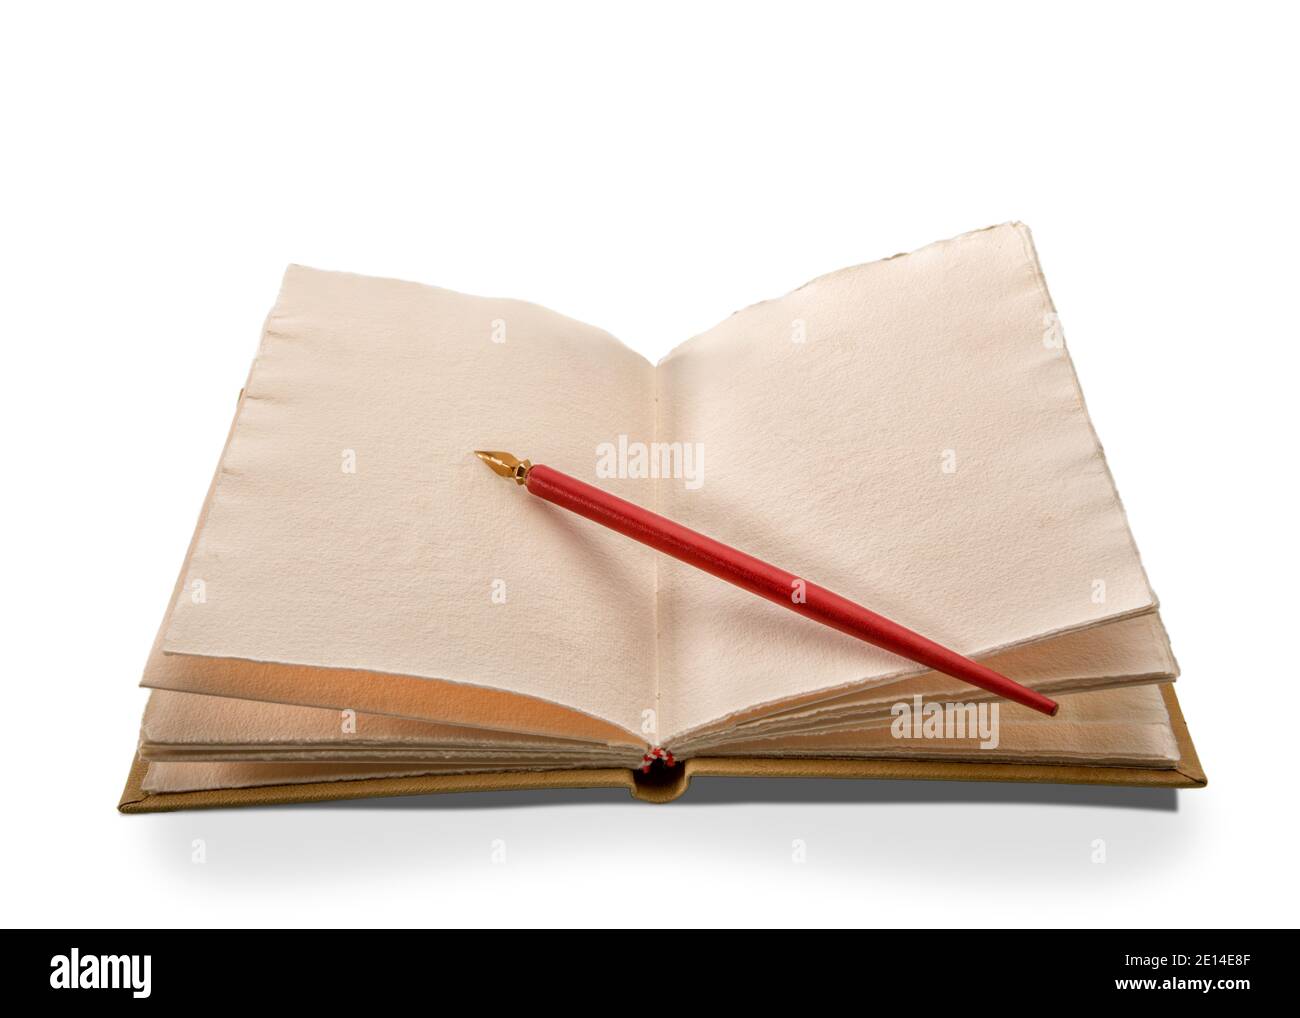 Vintage roter Stift mit Goldfeder auf antikem Leder Hardcover Notebook auf weißem Hintergrund isoliert Stockfoto